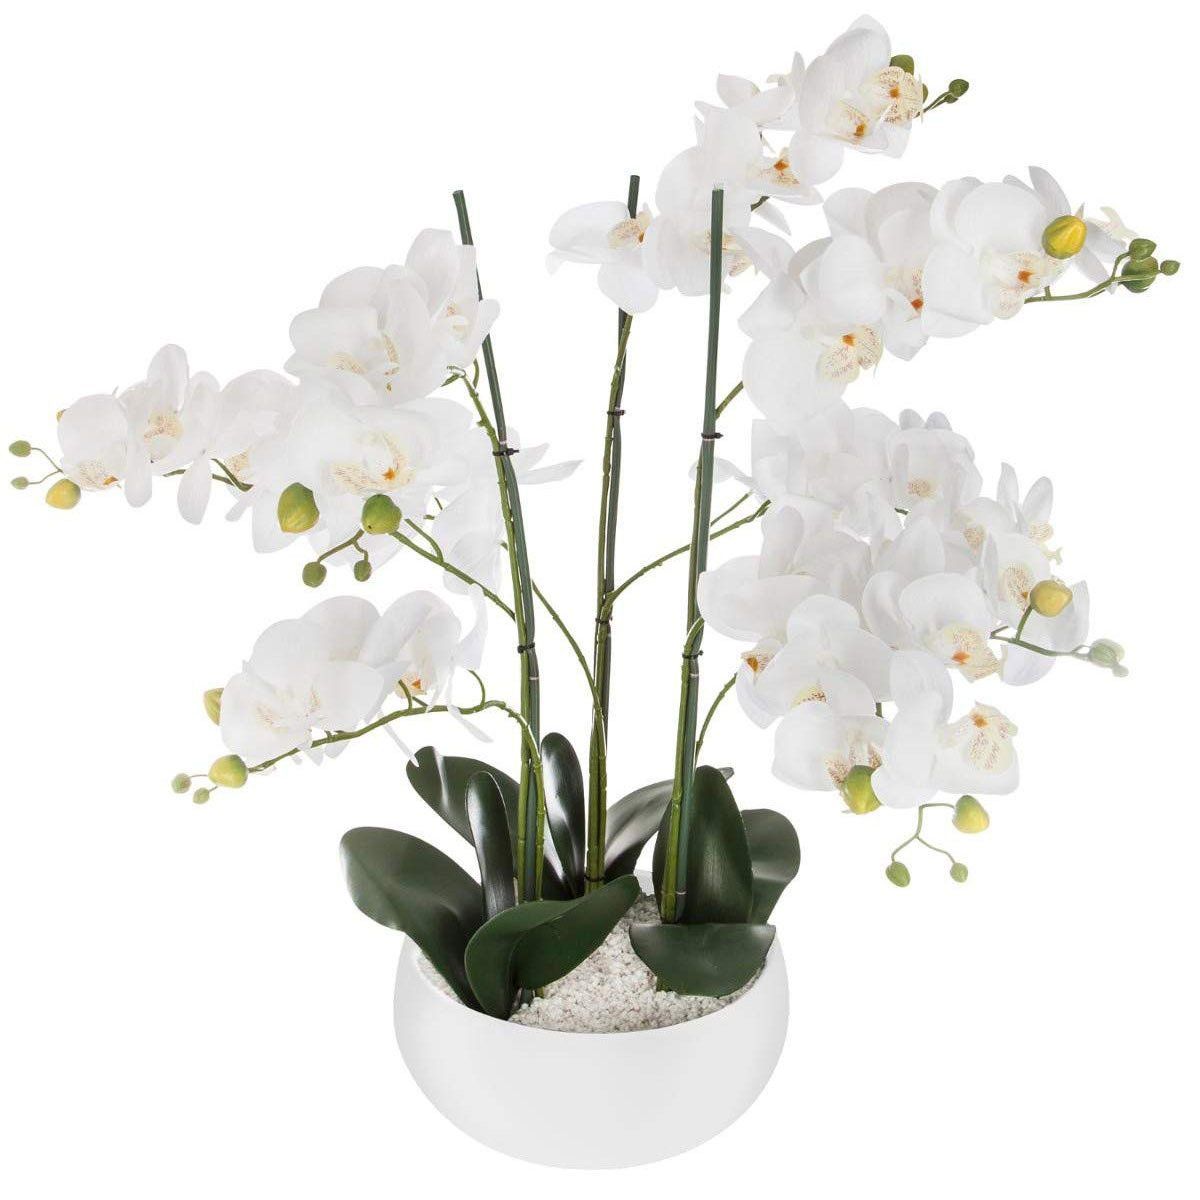 Atmosphera Umělá rostlina, umělá orchidej, bílý květináč, 65 cm - EDAXO.CZ s.r.o.